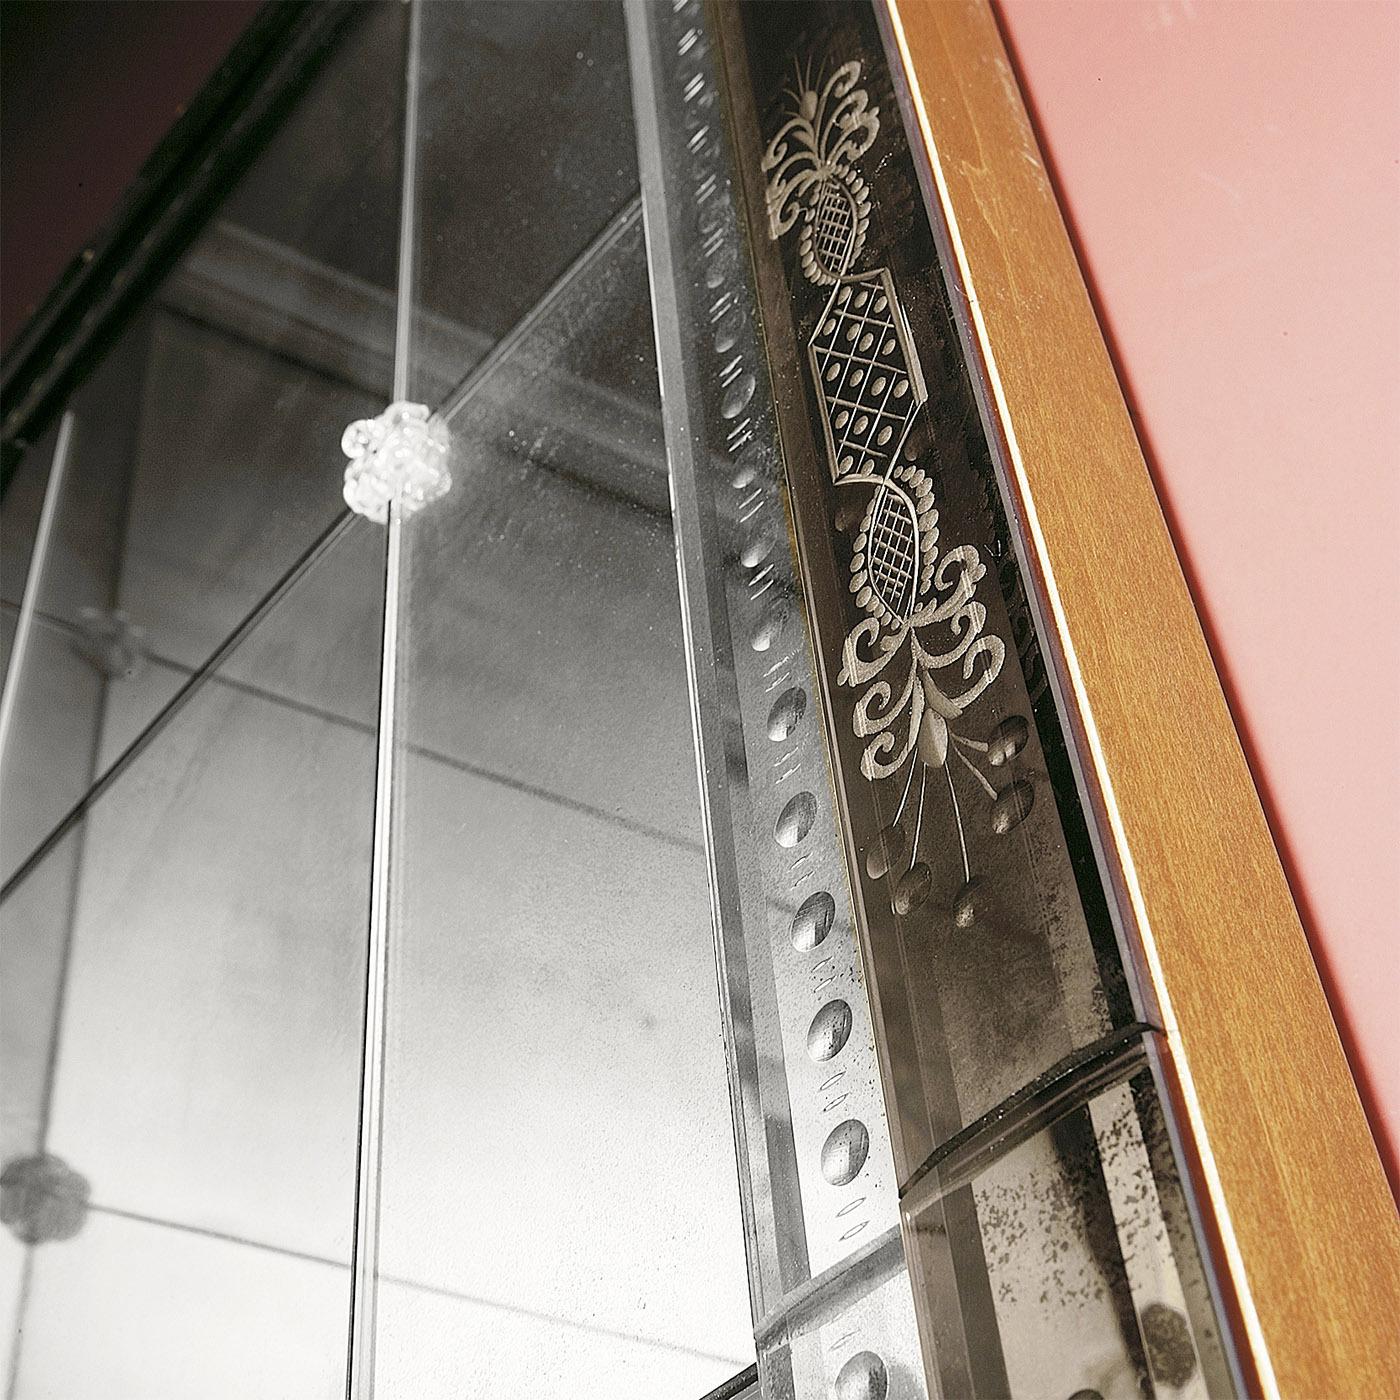 Faisant partie de la Collection Venetia et fabriqué à la main selon l'ancienne tradition vénitienne, ce miroir majestic est décoré de la gravure de motifs floraux. Structure en bois avec finition couleur noyer. Carreaux de verre biseautés centraux